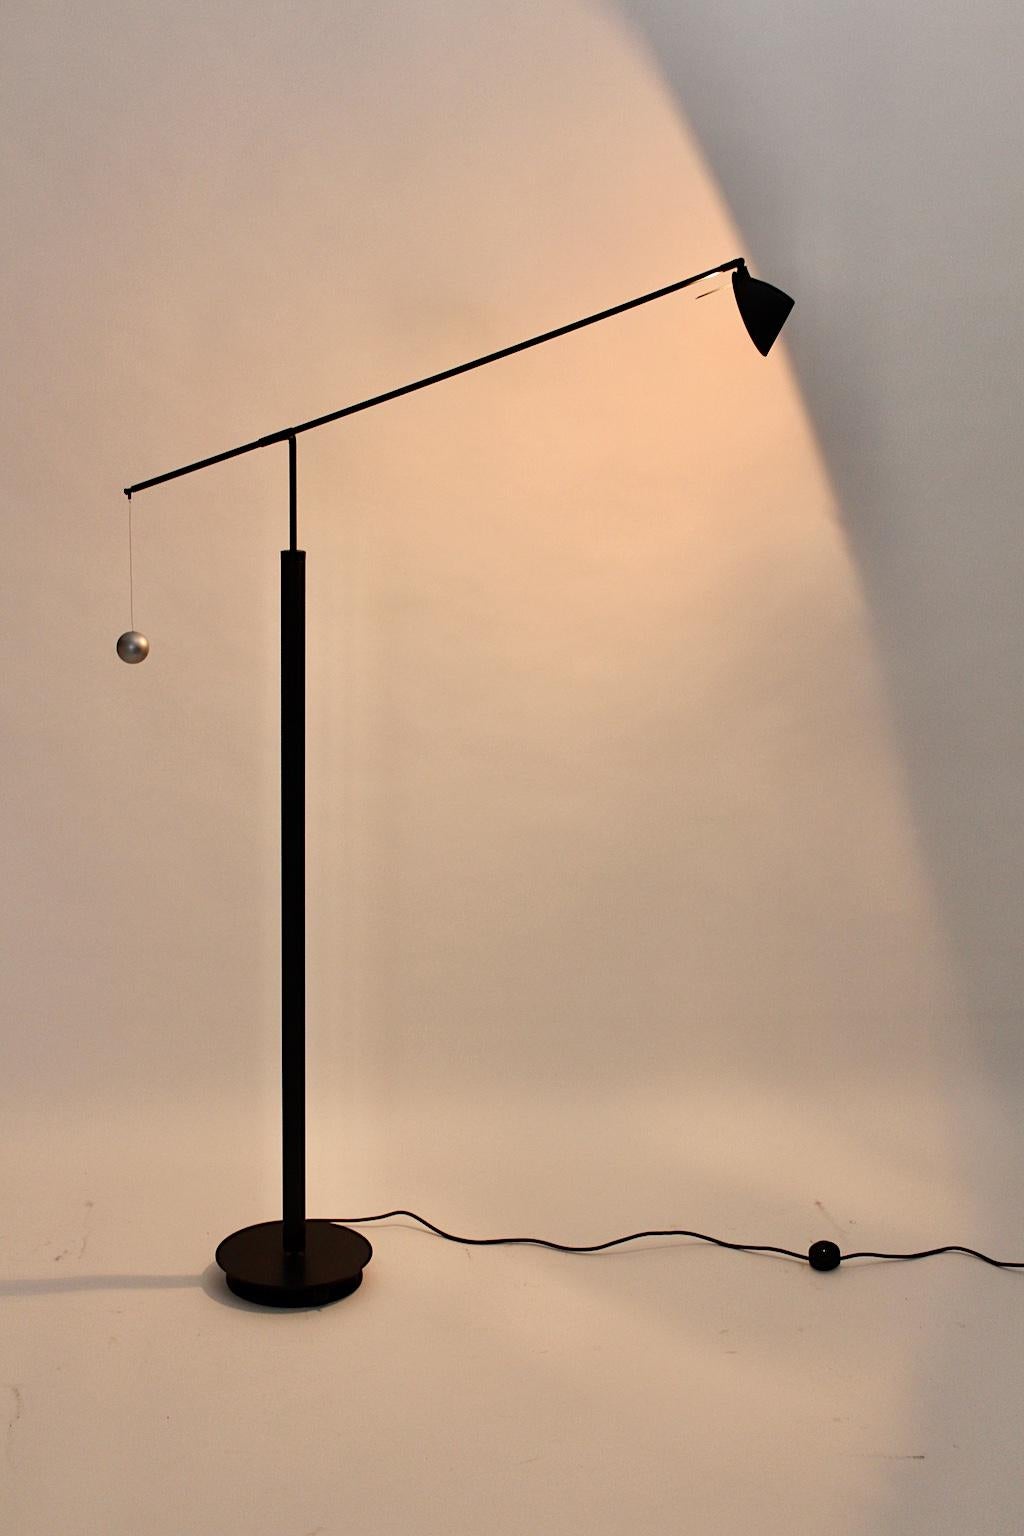 Un lampadaire noir vintage postmoderne, qui a été conçu par Carlo Forcolini 1989 pour Artemide, Italie.
Il est étiqueté sous la base : Artemide Milano Modelo Nestore Lettura Design Carlo Forcolini 
Fabriqué en Italie 220 V.
La construction en